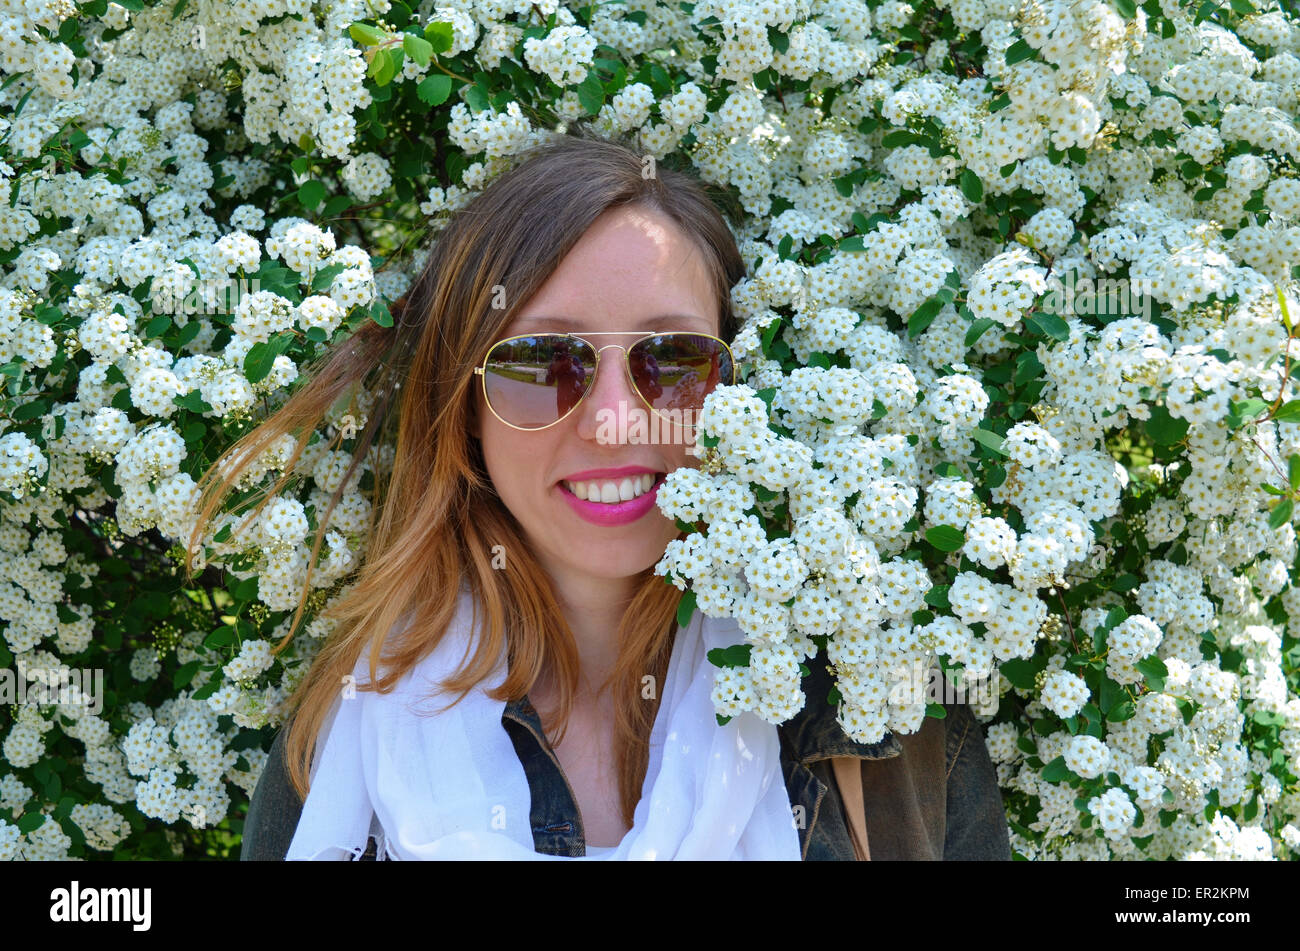 Happy young girl wearing sunglasses posing entourée de fleurs Banque D'Images